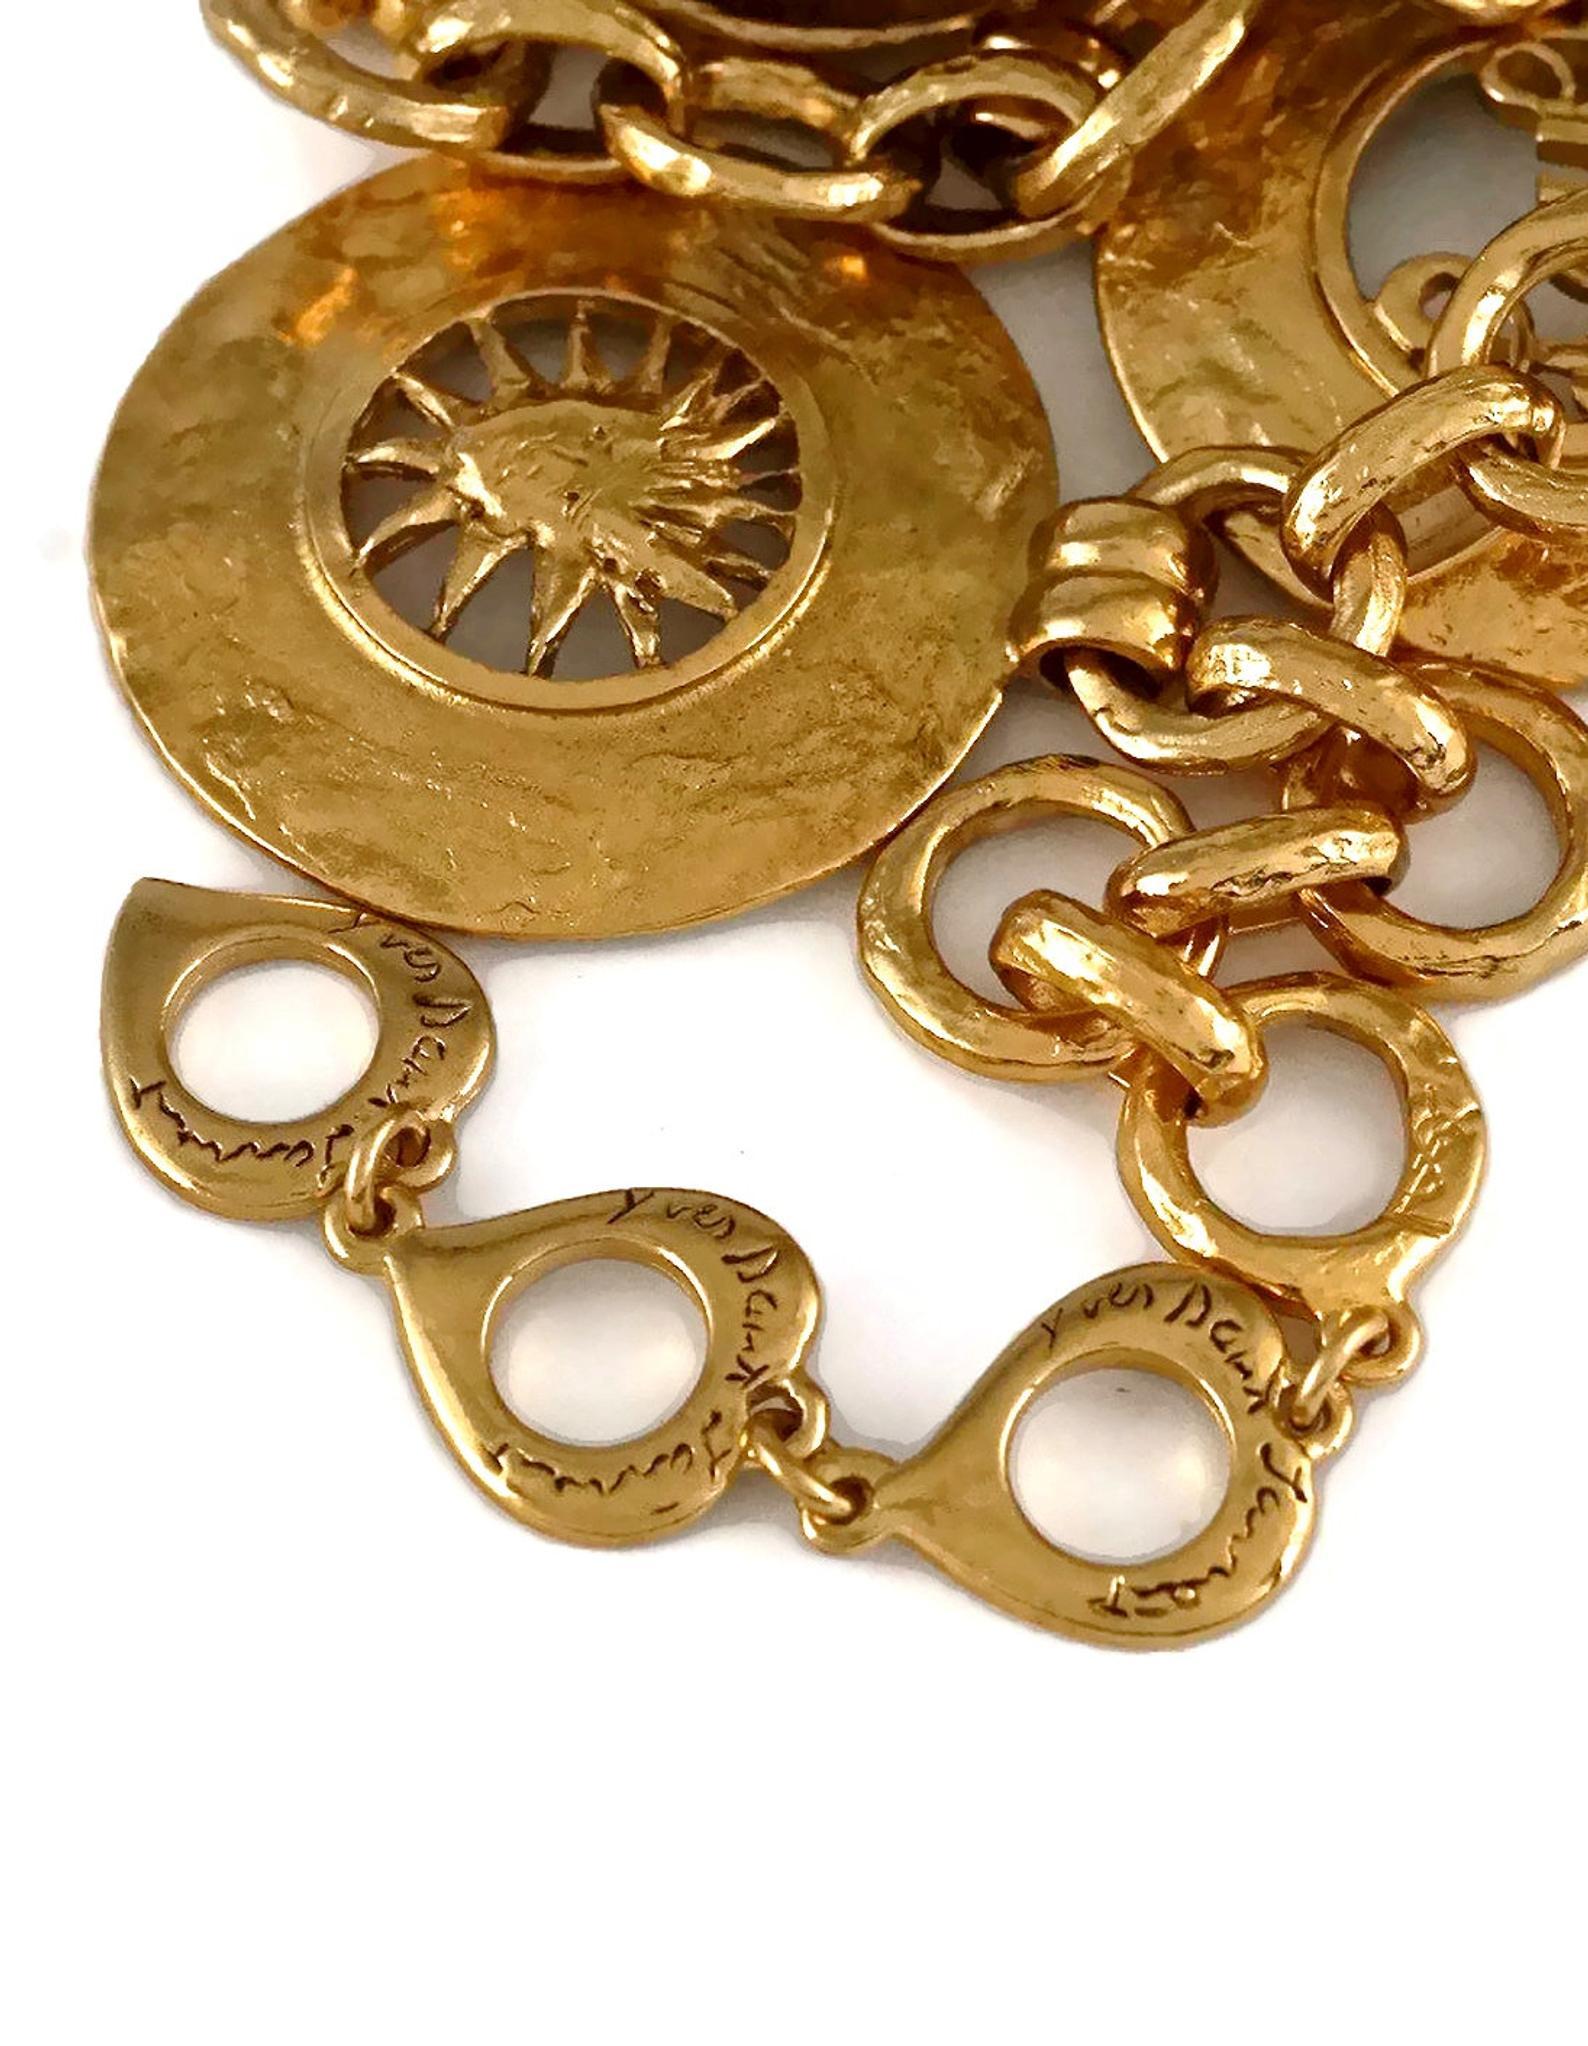 Vintage YVES SAINT LAURENT Ysl Iconic Emblem Disc Medallion Charm Necklace 4